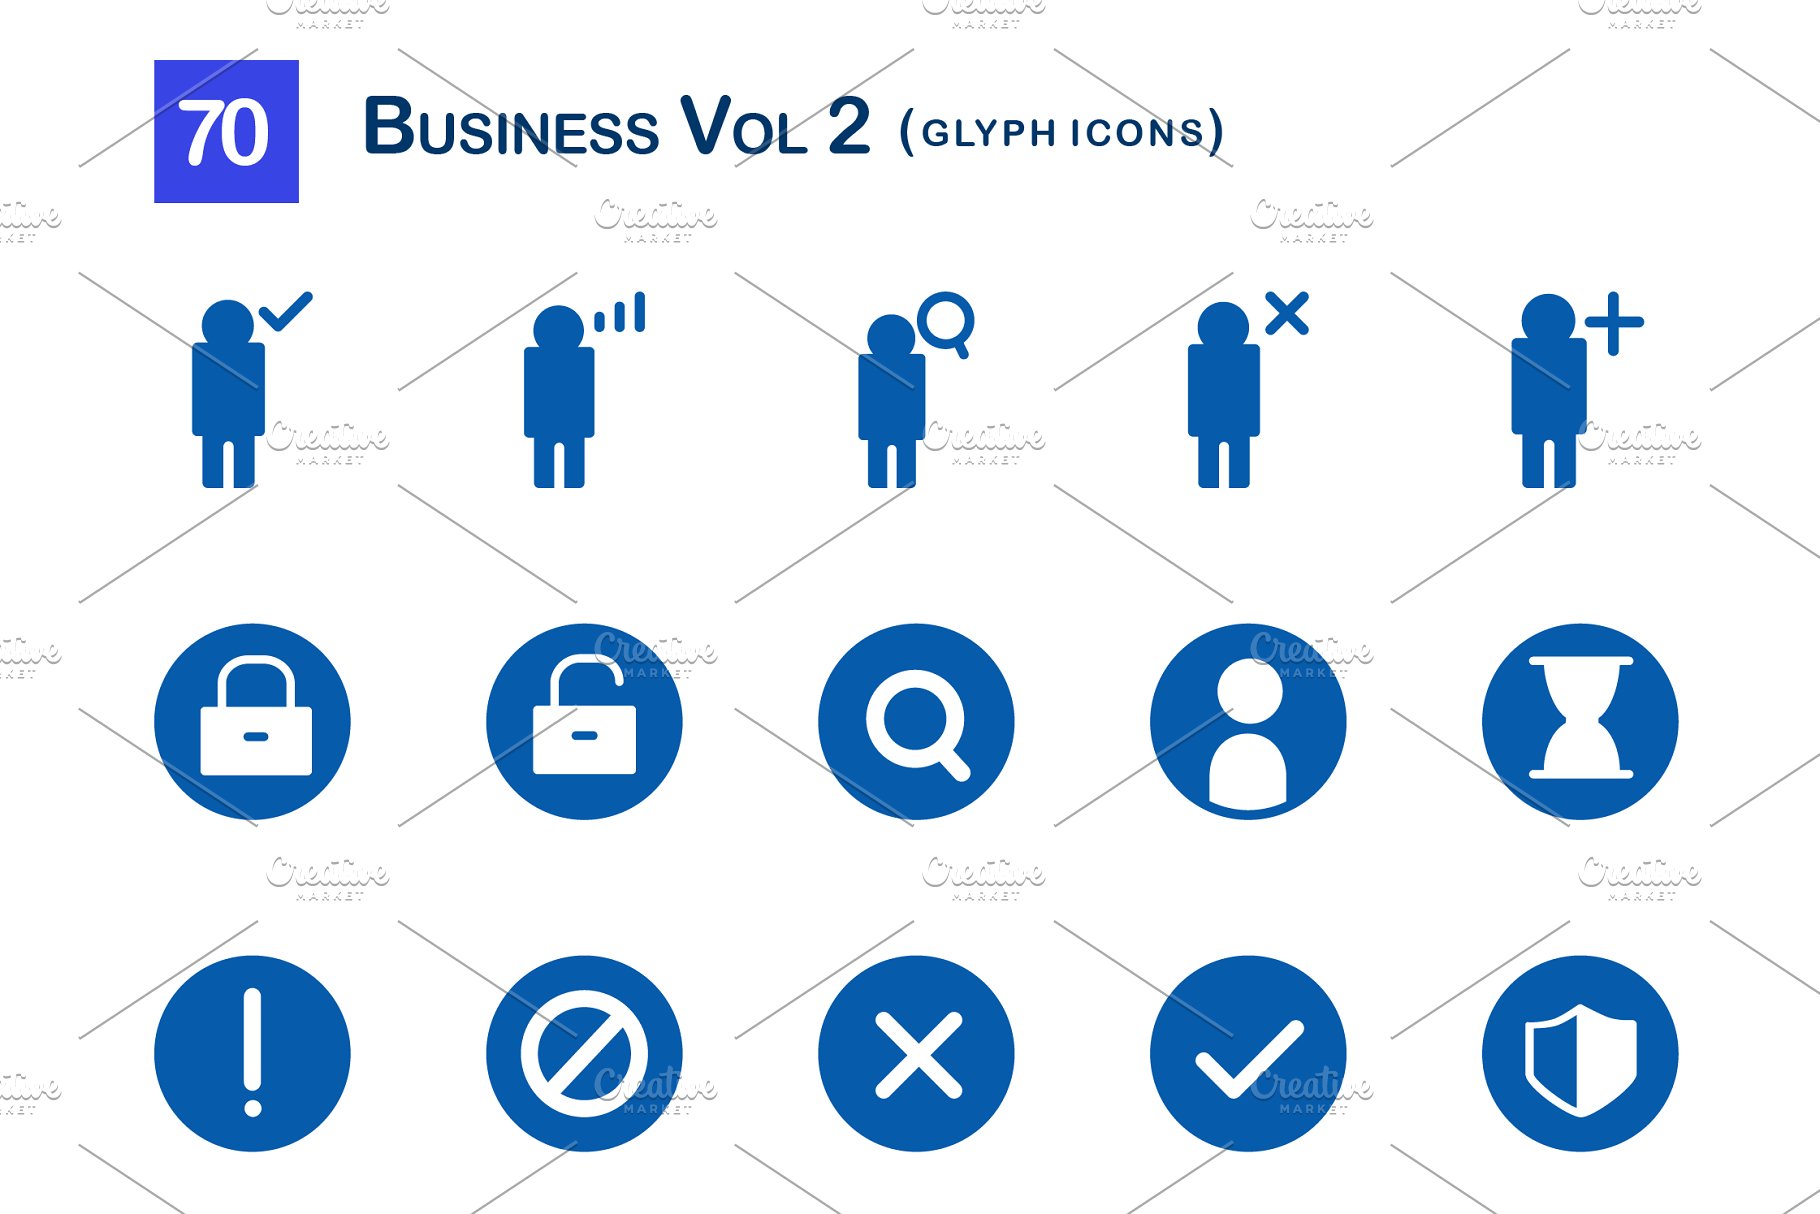 商业创意图标 70 Business Vol 2 Glyph